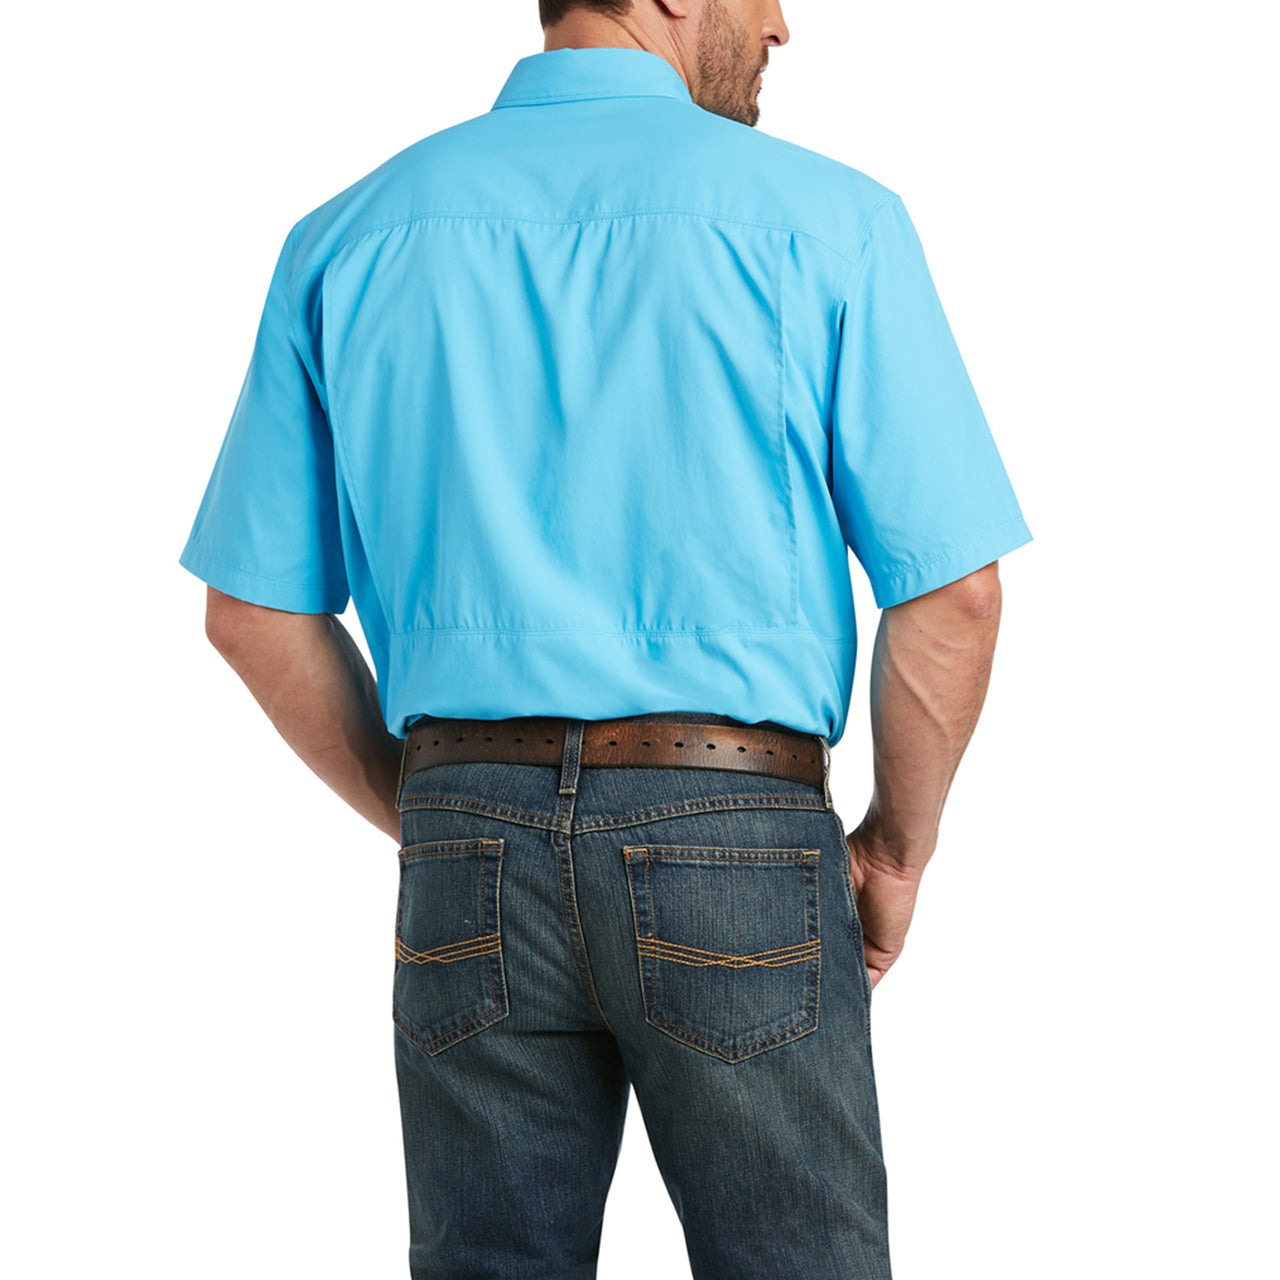 Ariat Men's VentTEK Outbound Aquarius Button Up Shirt 10036334